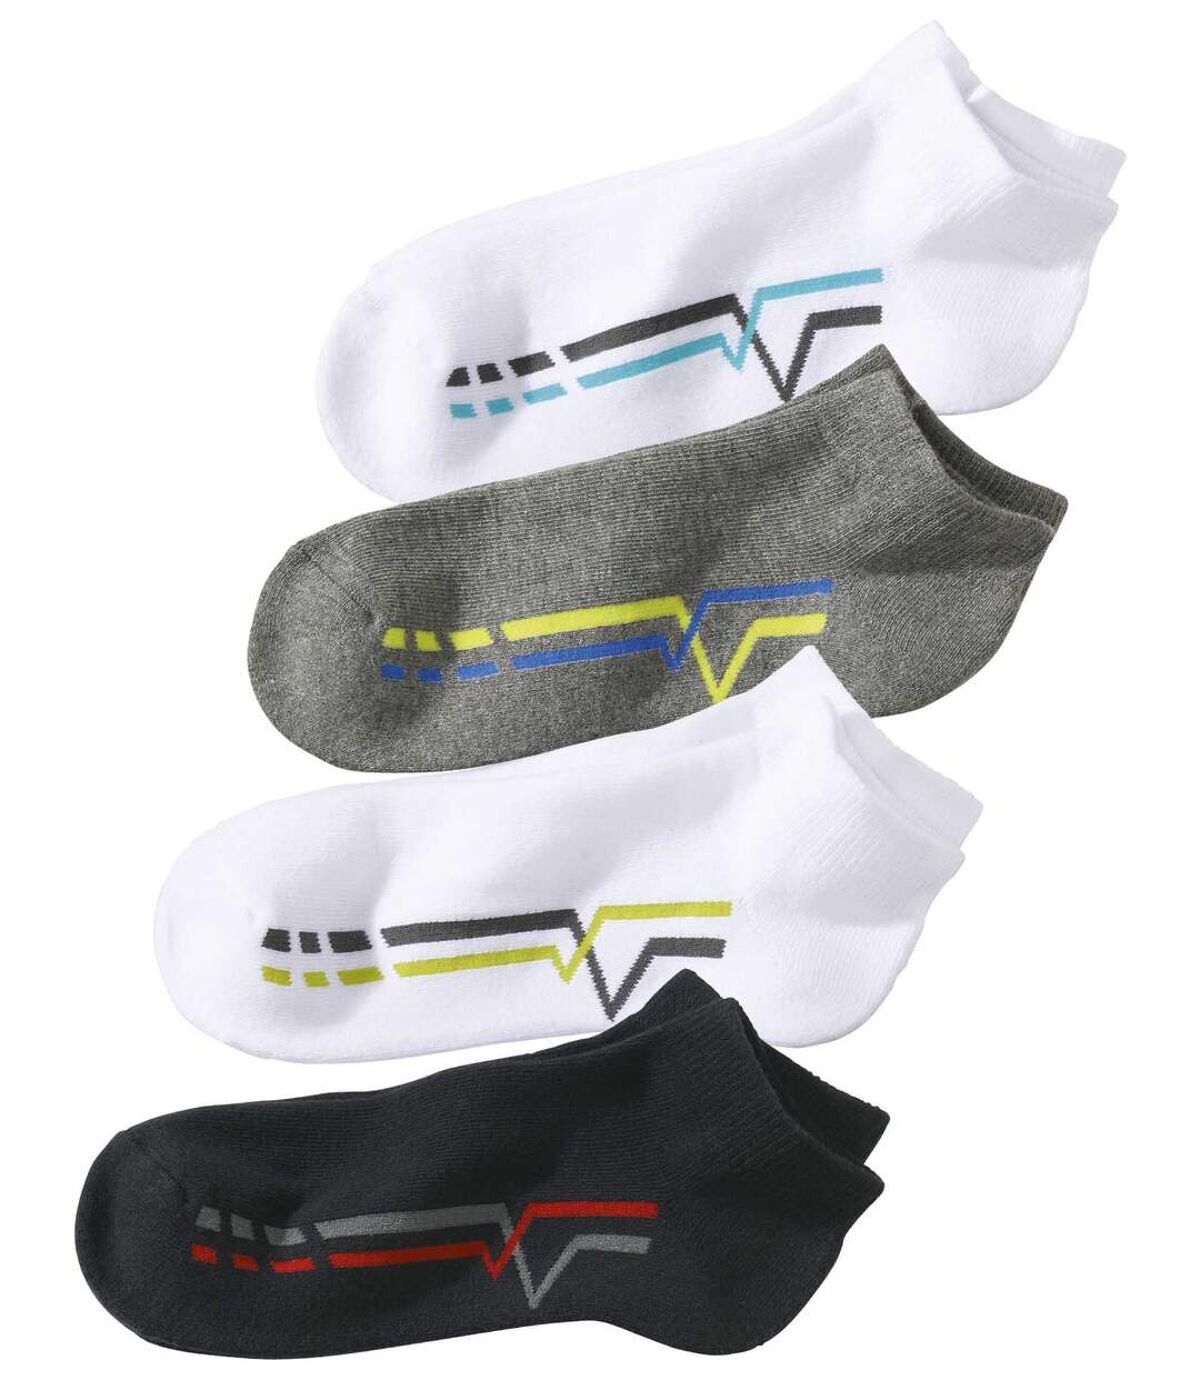 Pack of 4 Men's Sporty Sneaker Socks - White Black Gray Atlas For Men